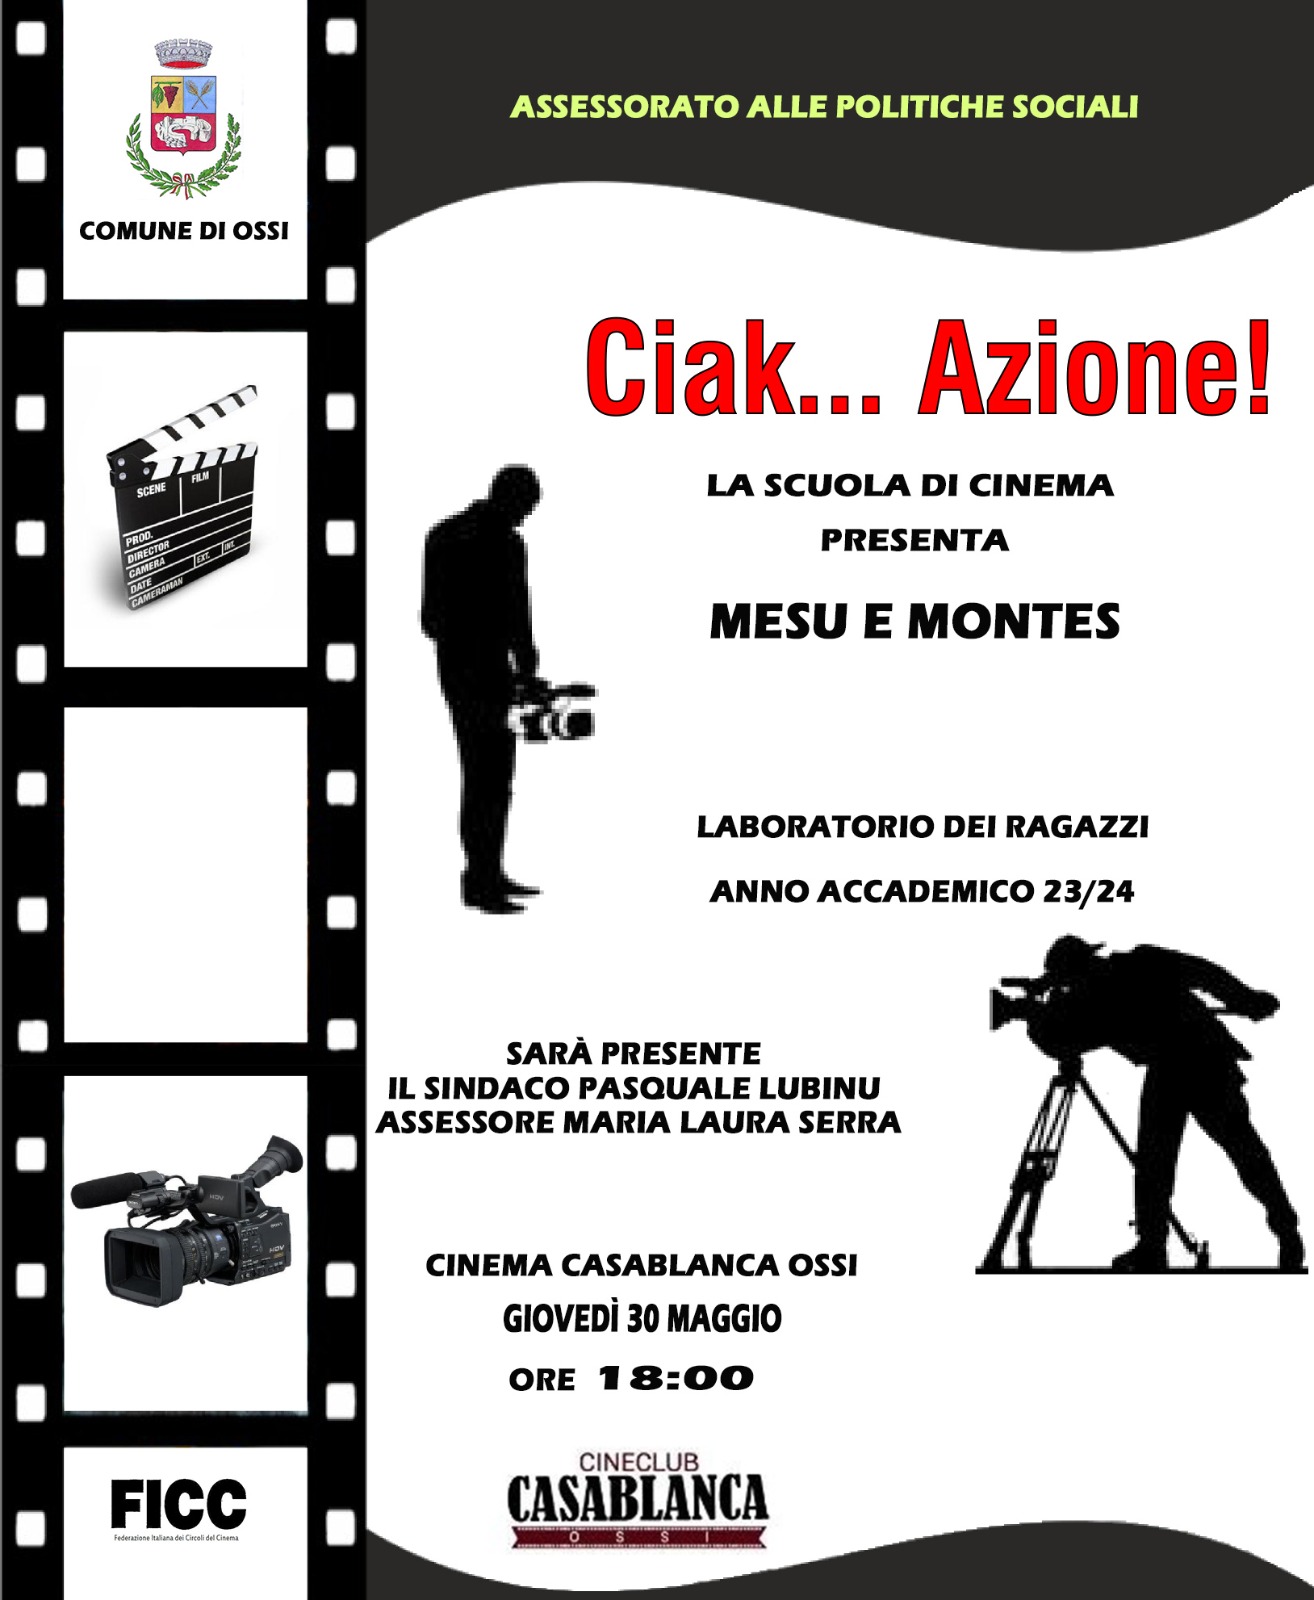 La scuola di cinema presenta Mesu e Montes giovedì 30 maggio ore 18:00 presso il cinema casablanca ossi